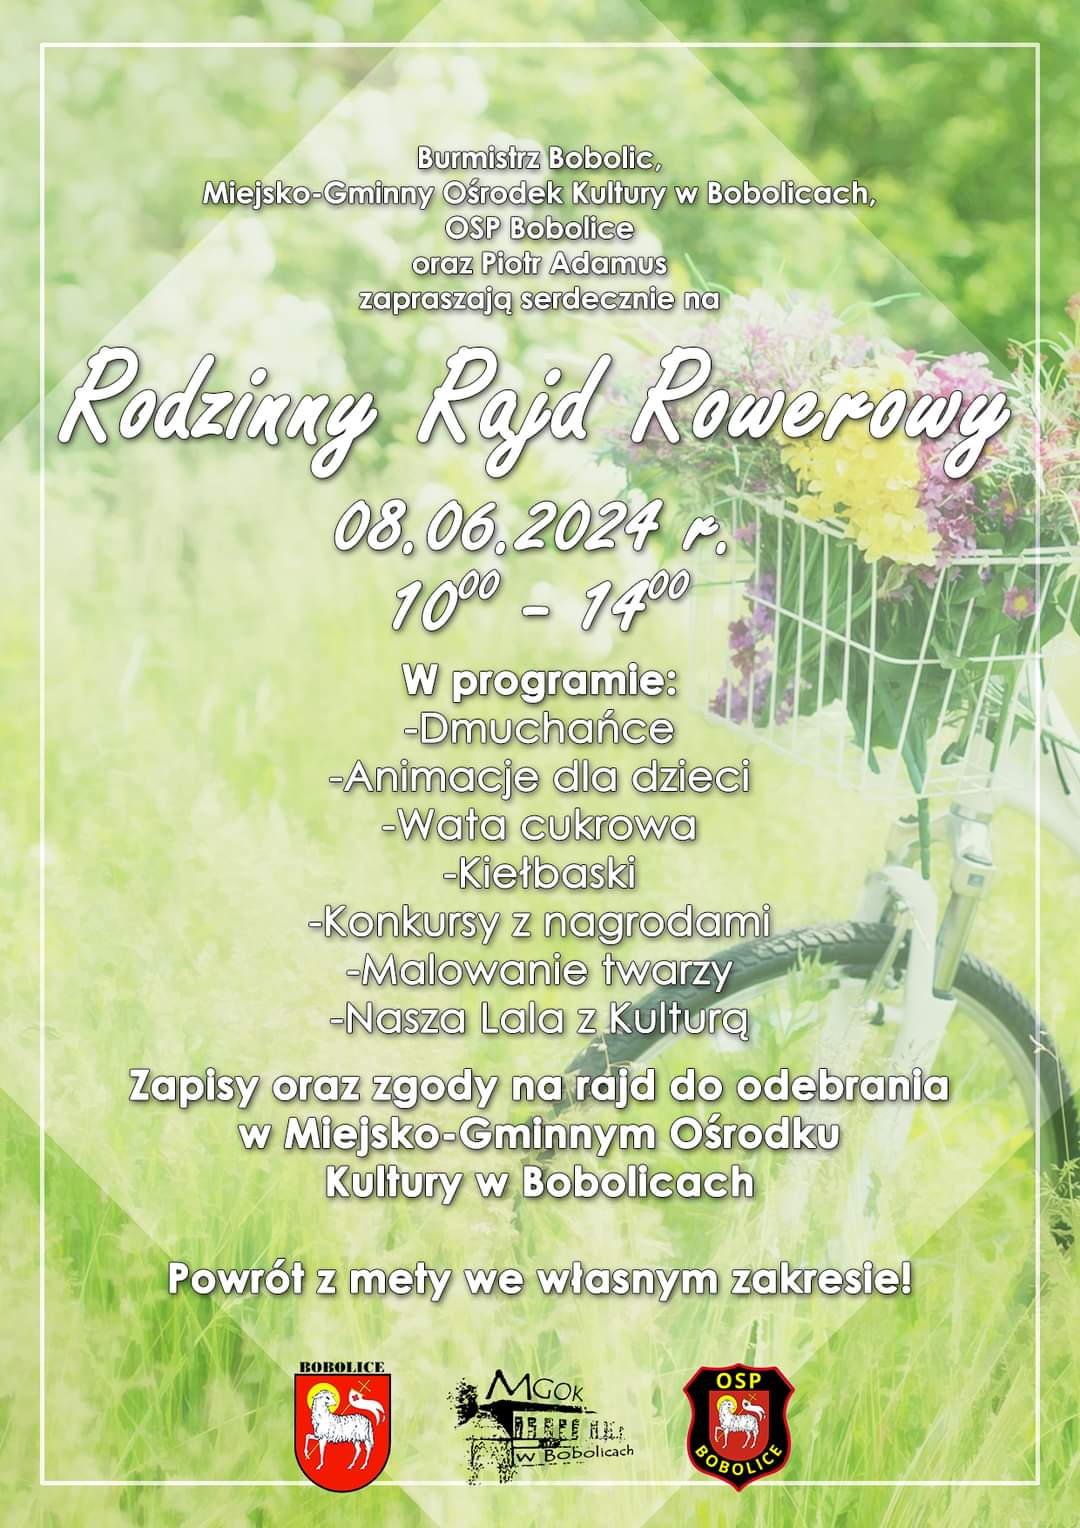 Plakat z zaproszeniem na rodzinny rajd rowerowy w Bobolicach 8 czerwca 2024